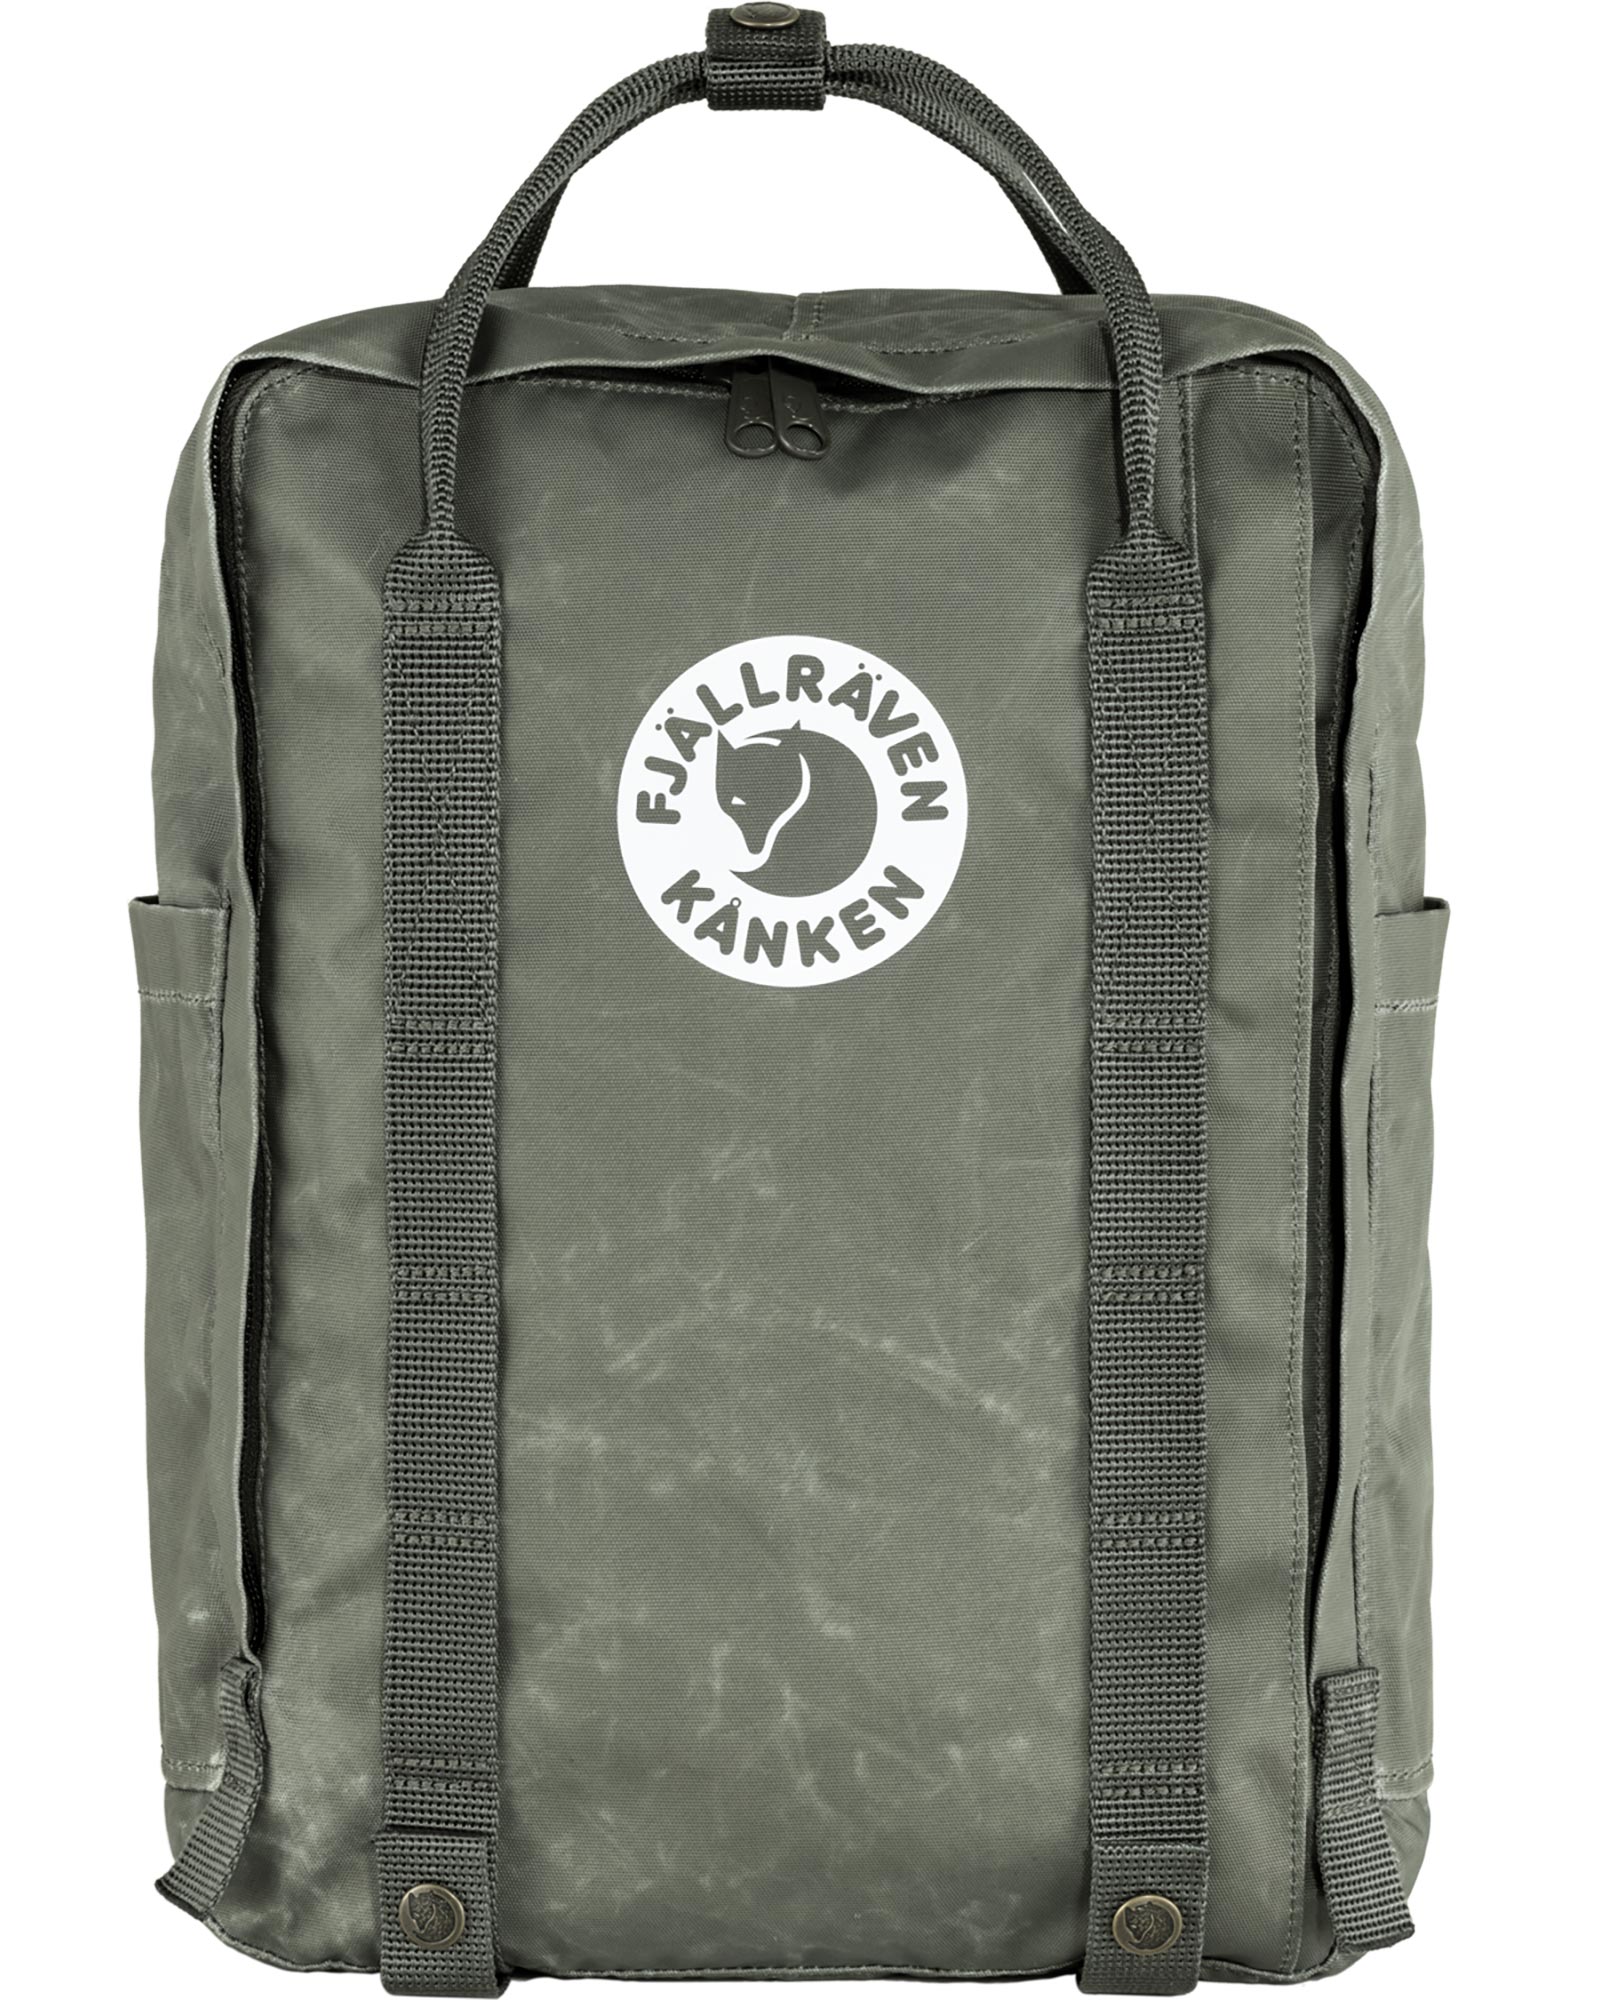 Product image of FjÃ¤llrÃ¤ven Tree-KÃ¥nken Backpack